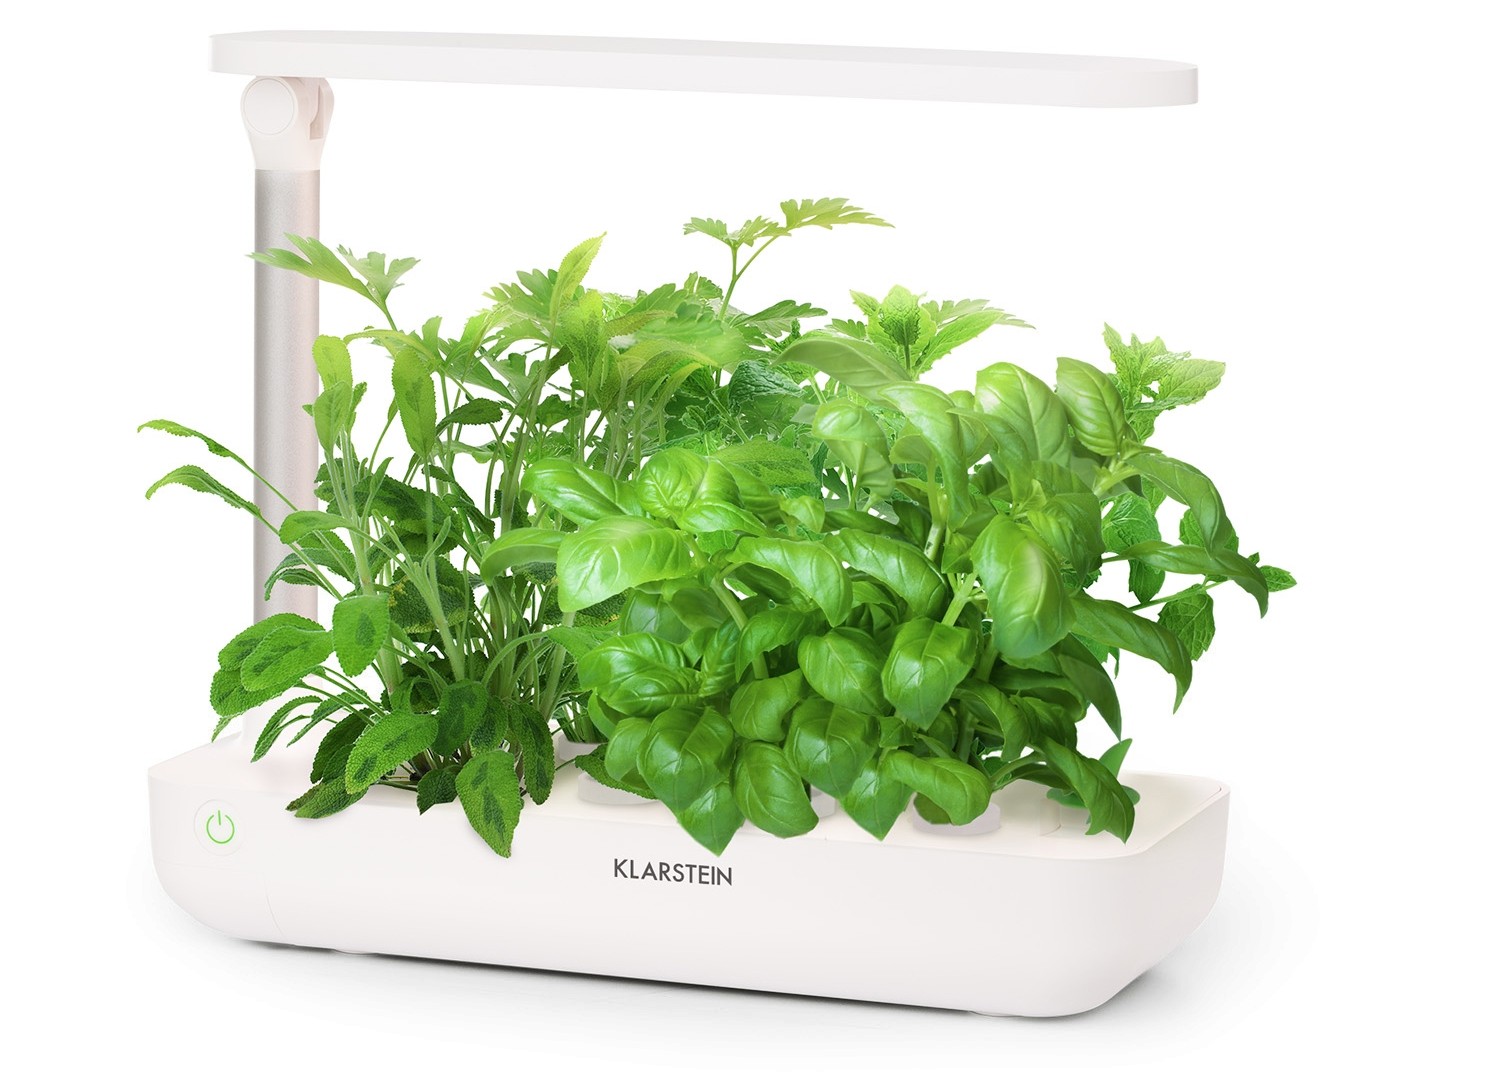 Produktvorstellung Ein smartes Beet für die Küche: Smart-Control-System wässert und beleuchtet - News, Bild 1